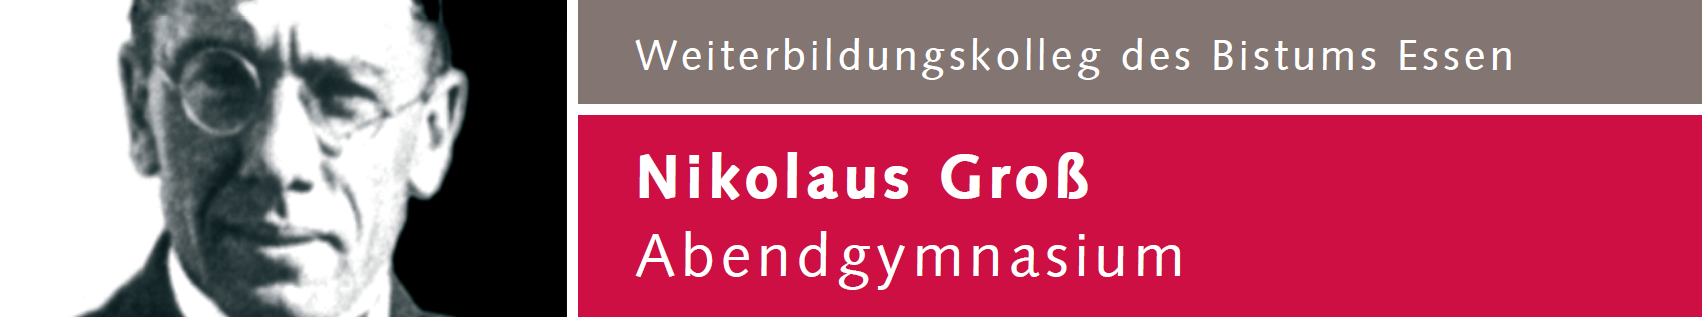 Nikolaus Groß Abendgymnasium, altes Logo